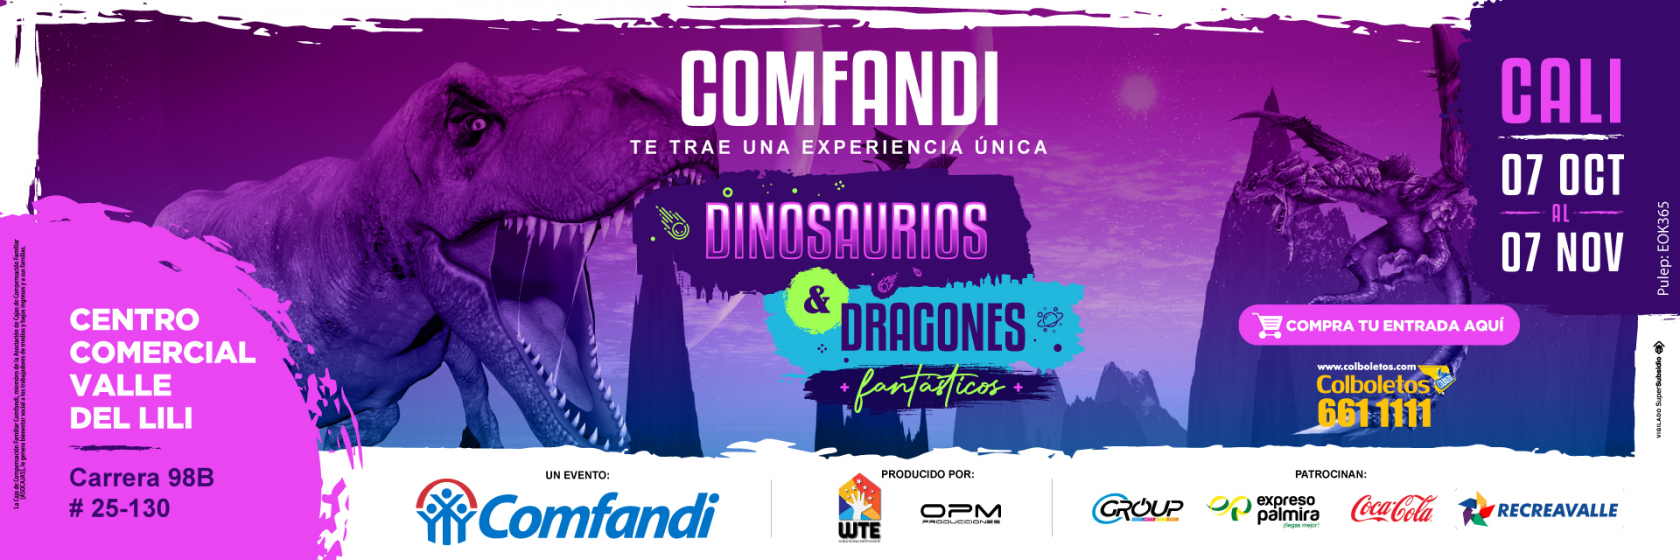 Banner Dinosaurios y Dragones 